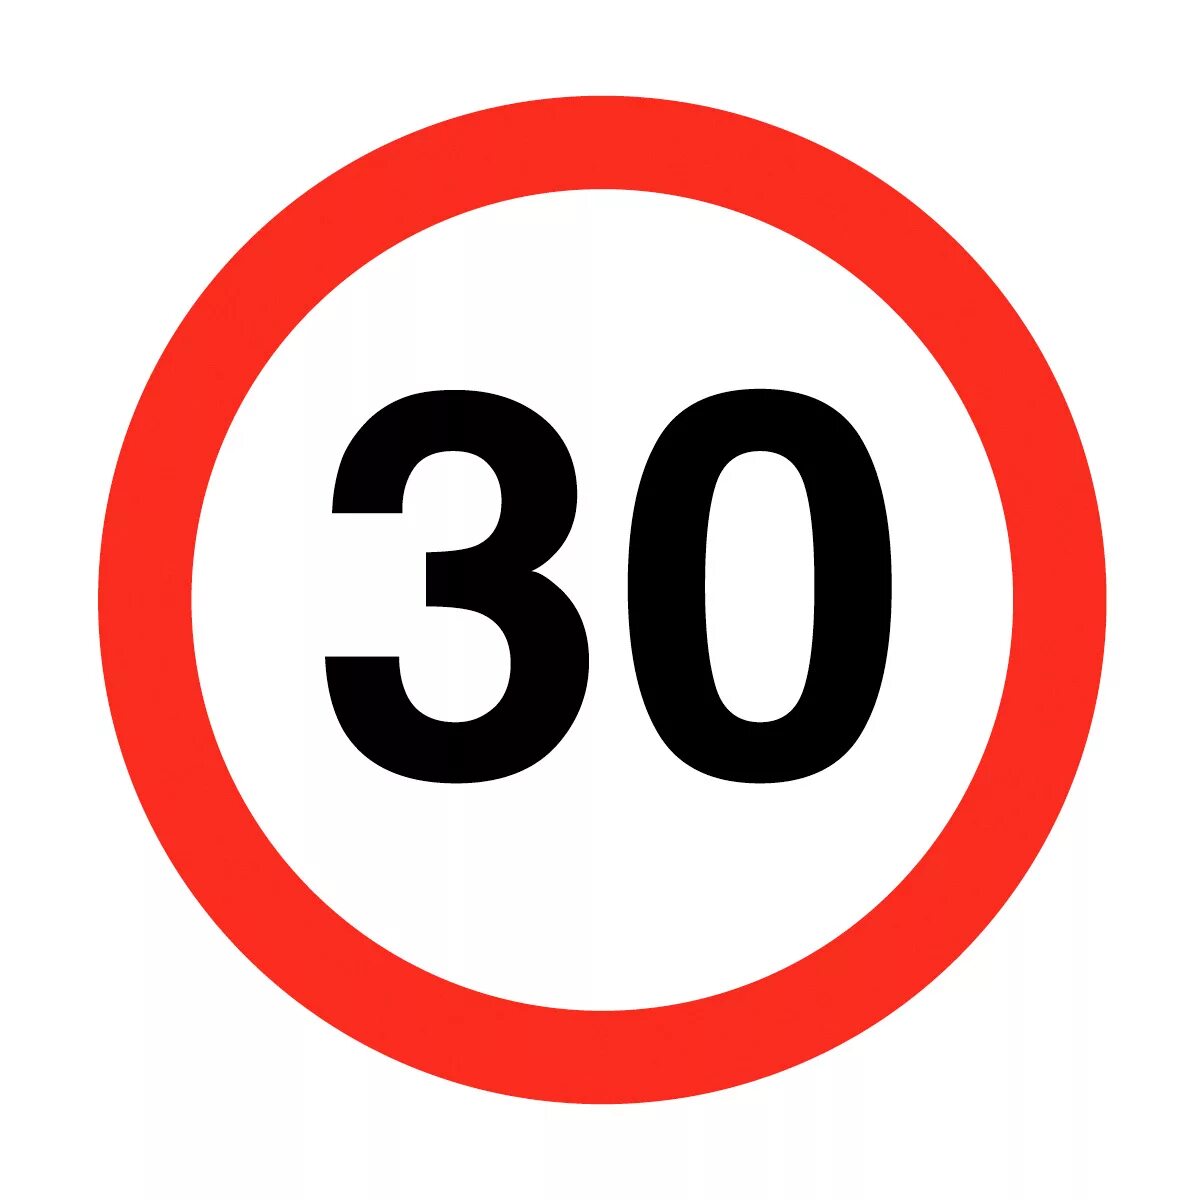 Дорожный знак ограничение скорости 30 км. Дорожный знак 80. Скорость 30 км/ч. Дорожный знак ограничение скорости 20 км. 30 и 35 можно